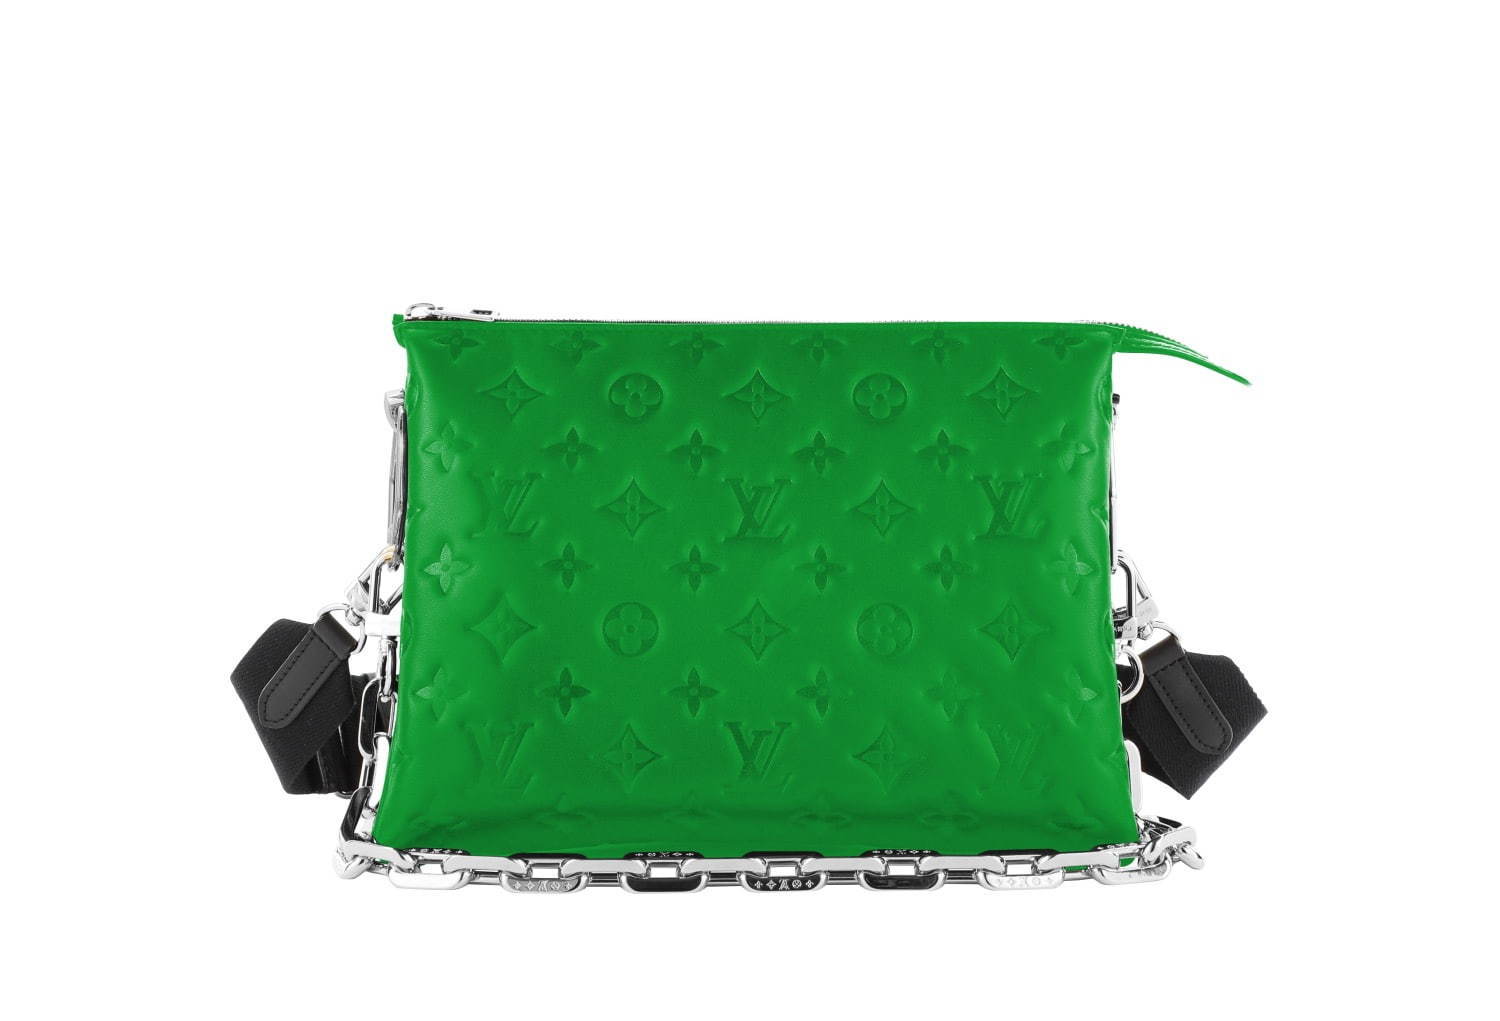 ルイ・ヴィトンの新作バッグ「クッサン」“クッション”に着想を得た 